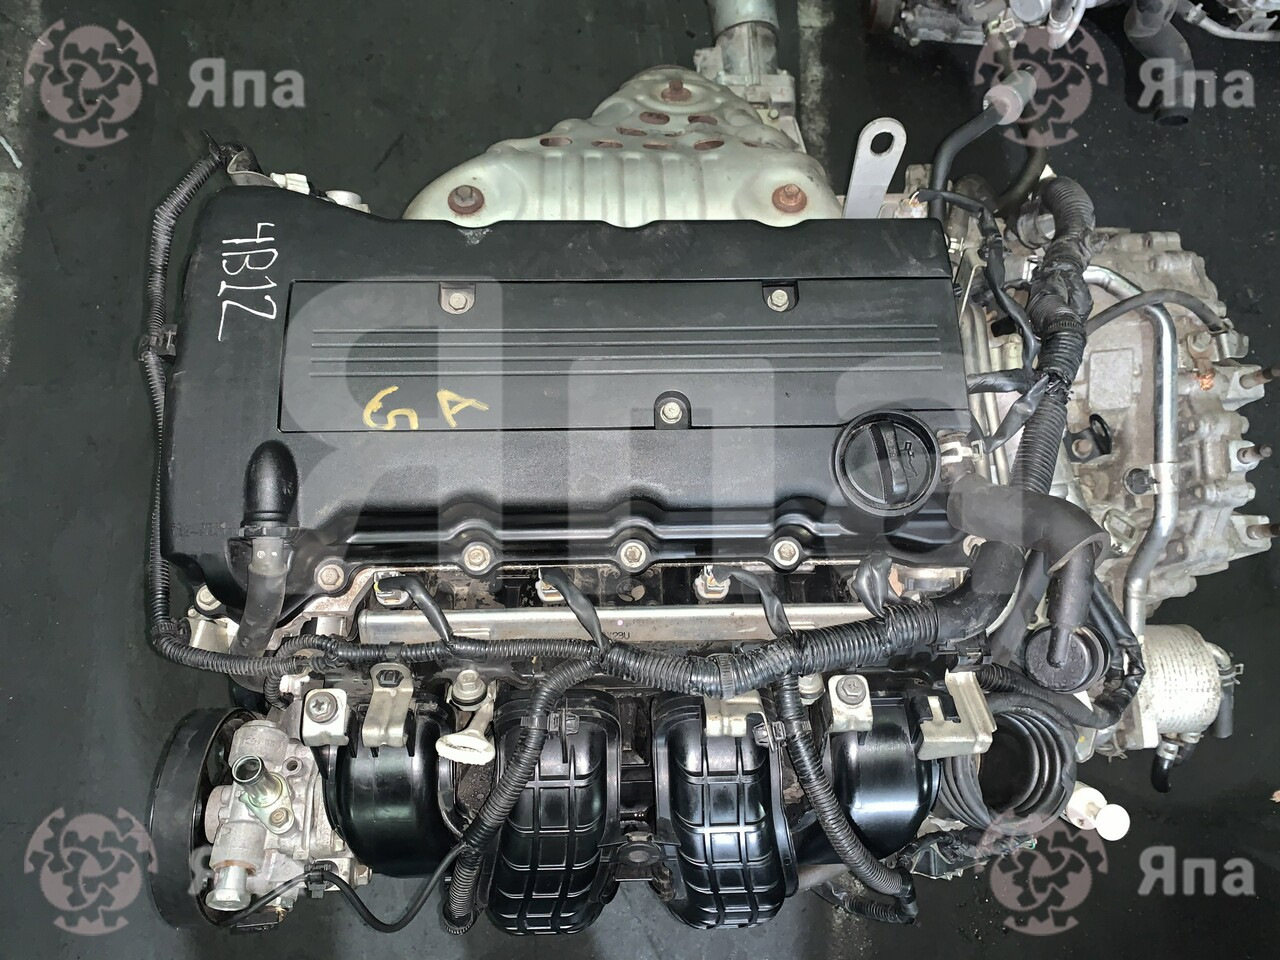 Мицубиси аутлендер двигатель 2. Мотор Аутлендер 2.4. ДВС Митсубиси Аутлендер 2.4. Двигатель Митсубиси Аутлендер XL 2.4. 4b12 Mitsubishi двигатель.